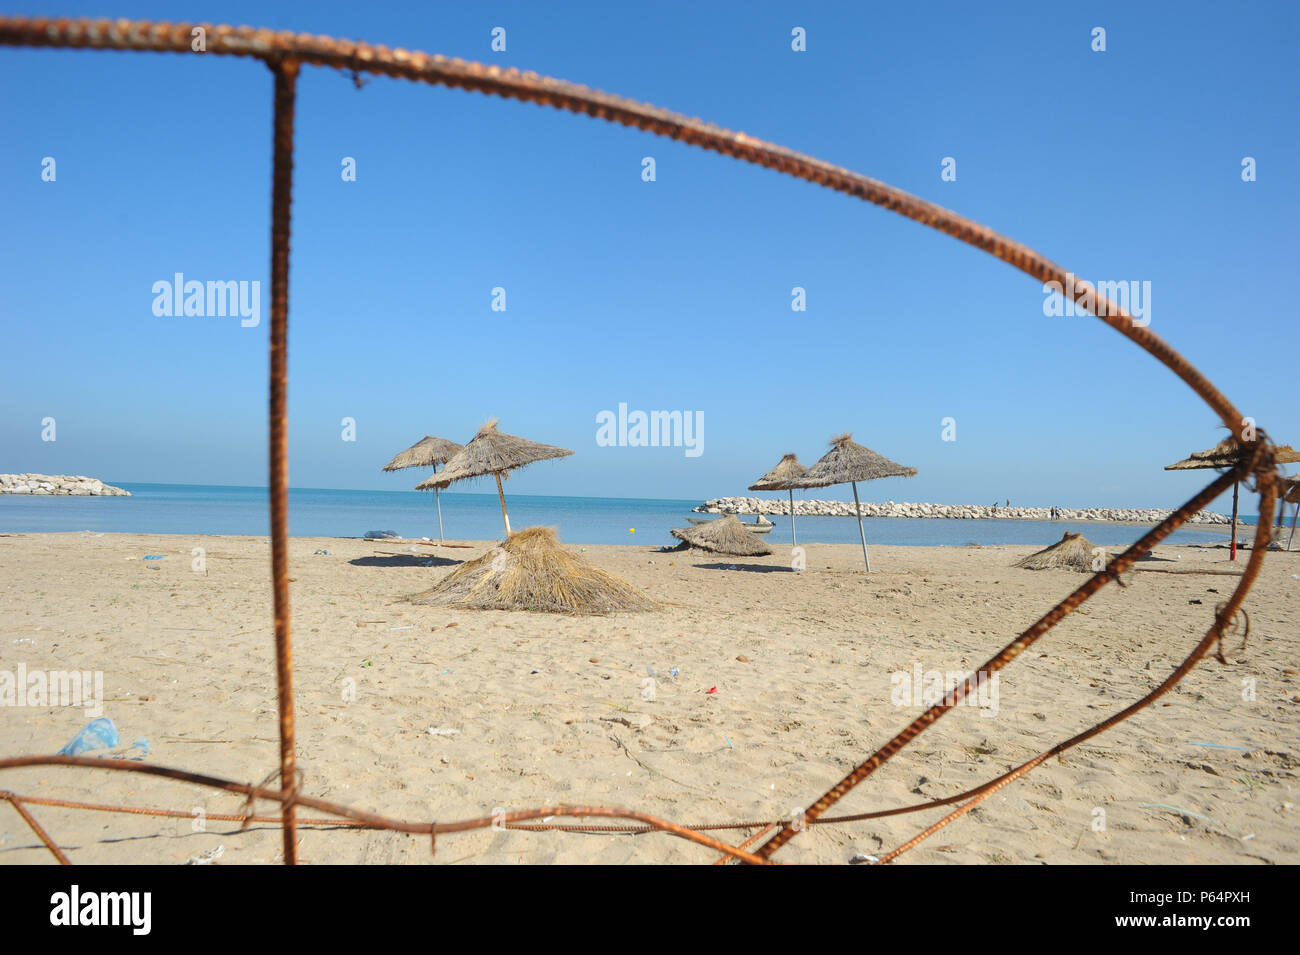 Ottobre 21, 2014 - Hammam-Lif, Tunisia: Vista della spiaggia di Hammam-Lif, un sobborgo meridionale della capitale Tunisi. Questo usato per essere una bella spiaggia turistica ma è ora abbandonata. La plage de Hammam-Lif, autrefois une attrazione touristique, laissee est l' abbandono.*** Francia / NESSUNA VENDITA A MEDIA FRANCESI *** Foto Stock